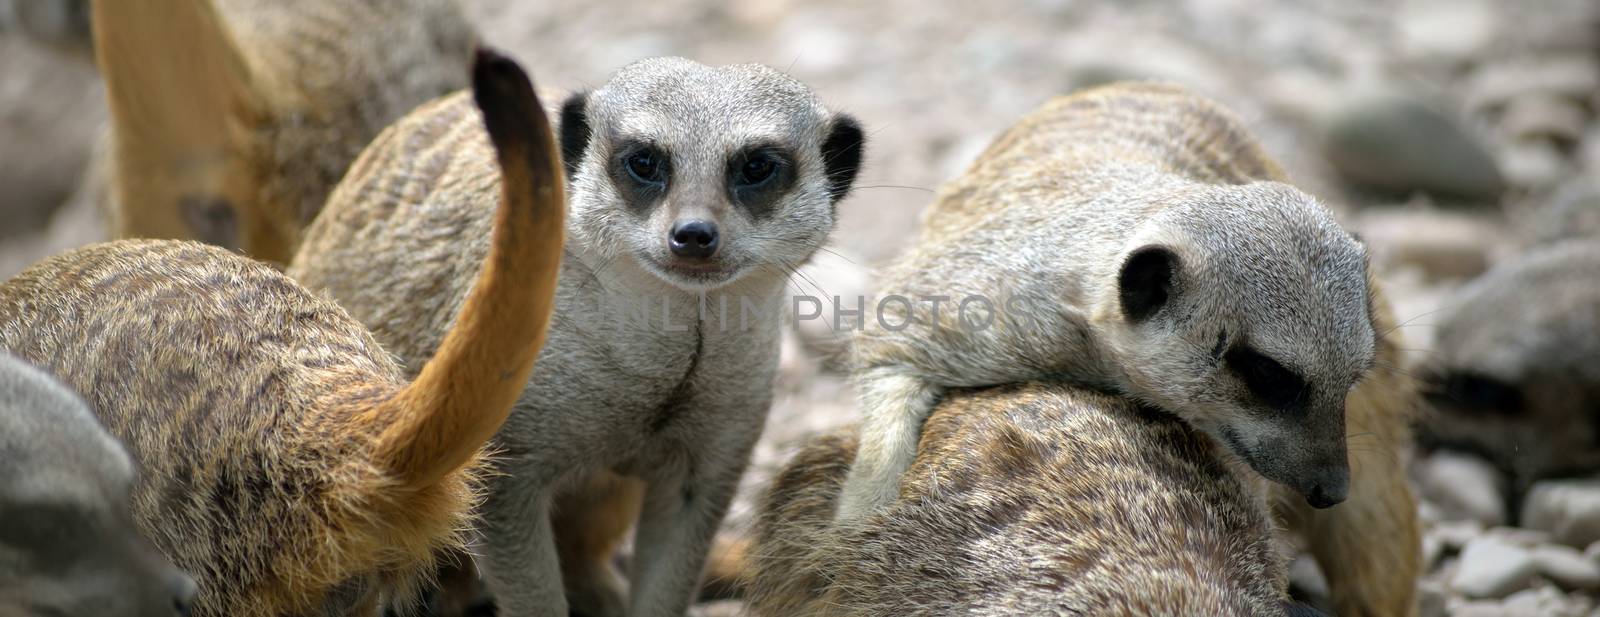 meerkat family in fota wildlife park by morrbyte